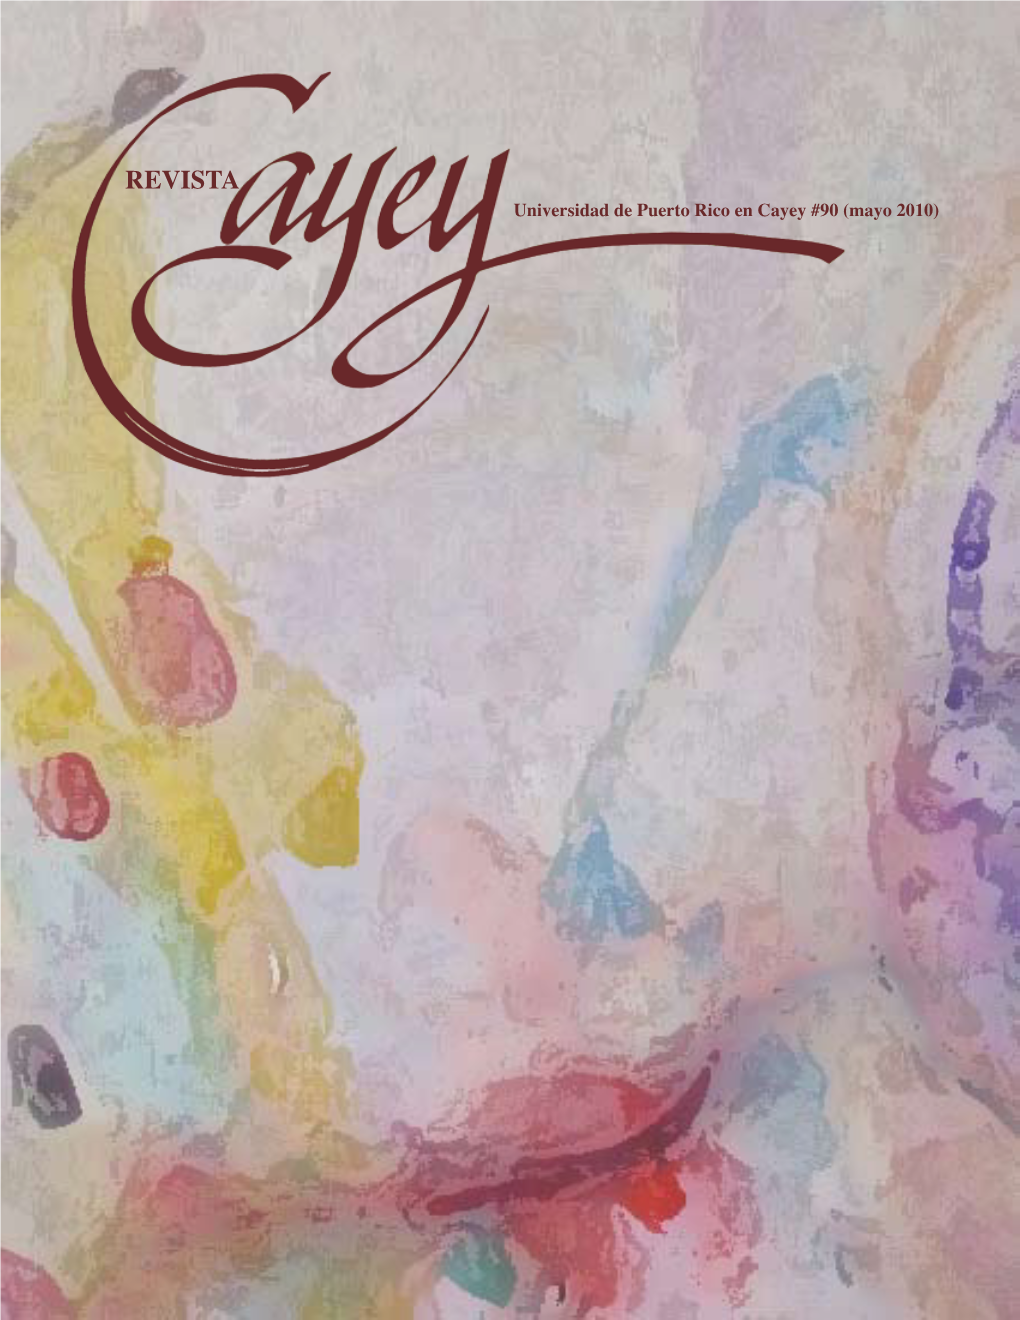 REVISTA Universidad De Puerto Rico En Cayey #90 (Mayo 2010)  Revista Cayey #90 (Mayo 2010) Revista Cayey #90 (Mayo 2010)  Directora Dra